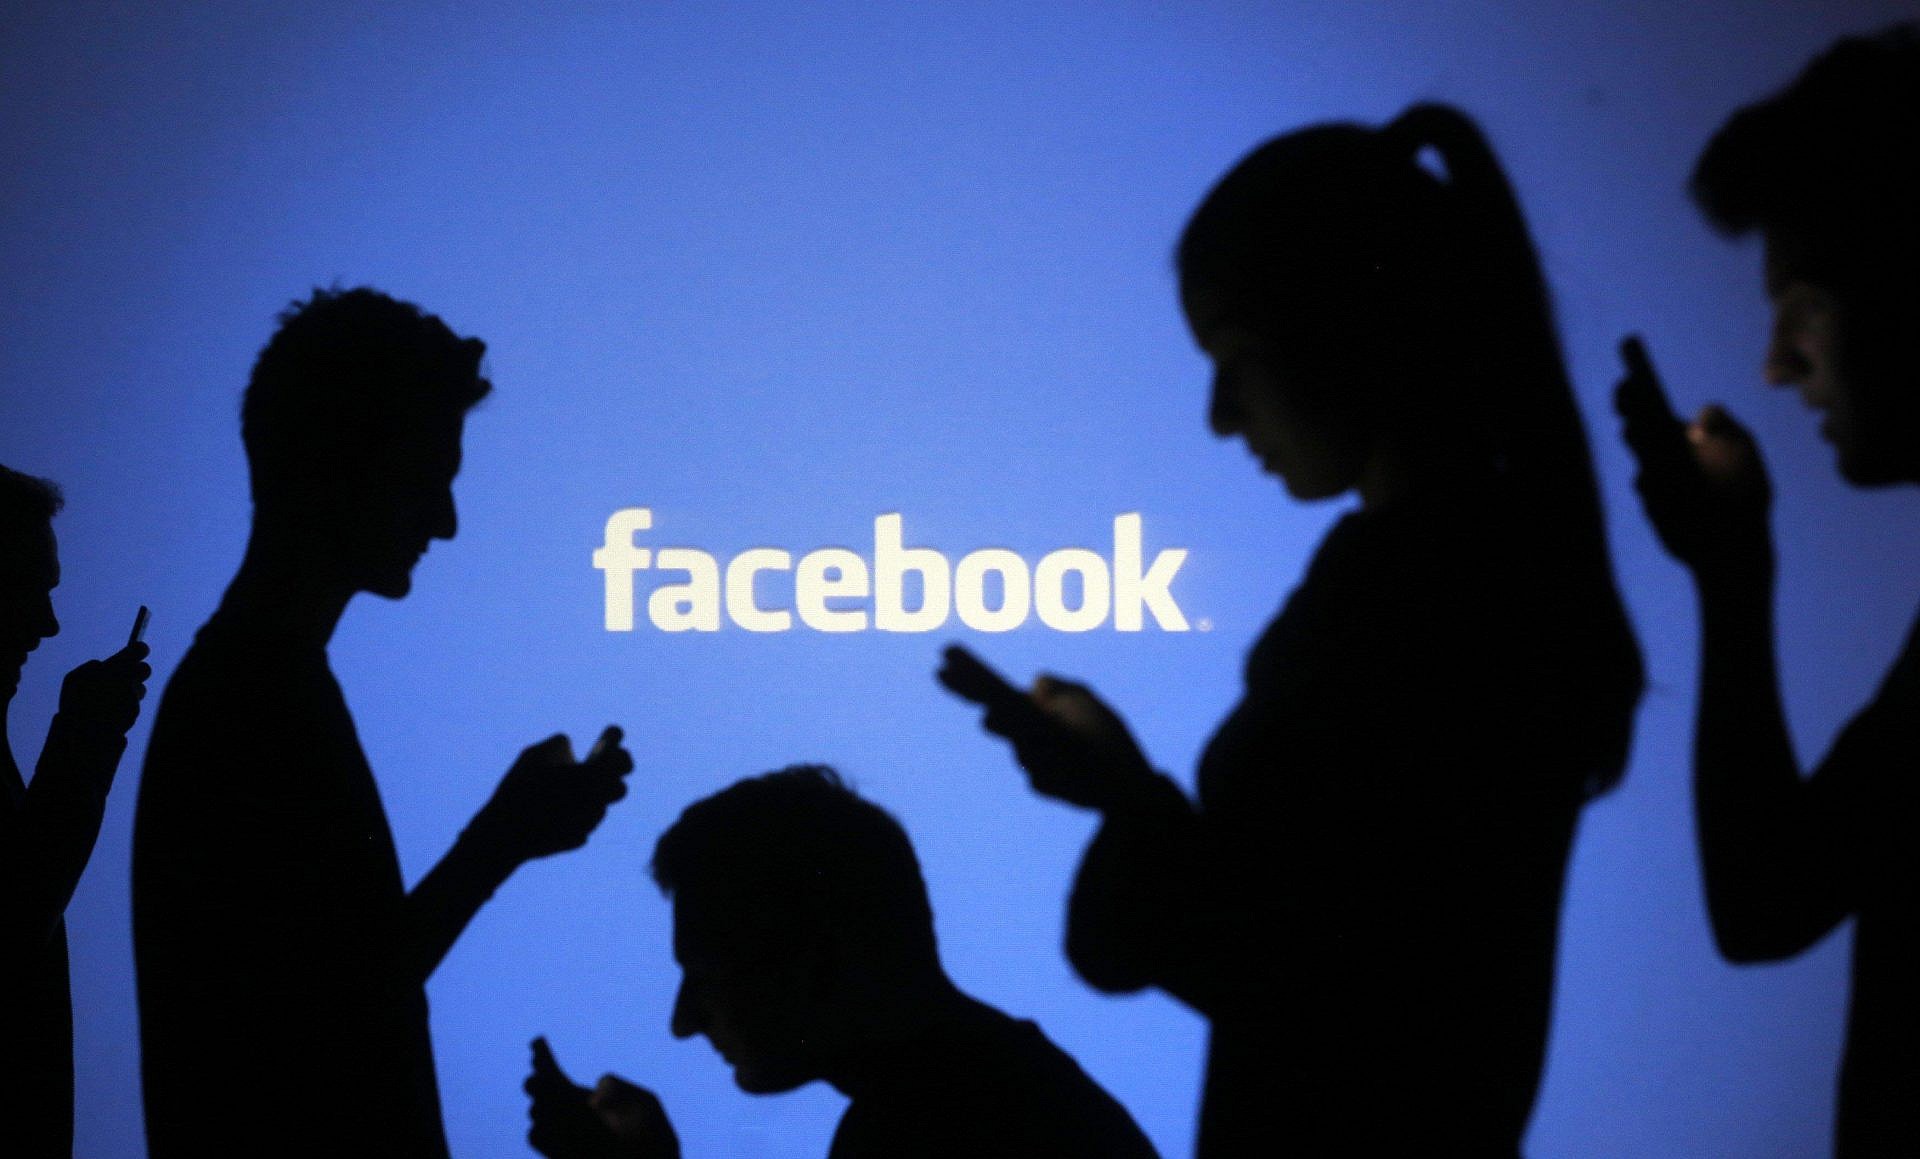 Facebook จะเก็บข้อมูลผู้ใช้งานถึงแม้ว่าจะเป็นคนที่ไม่ได้เล่น Facebook ก็ตาม!